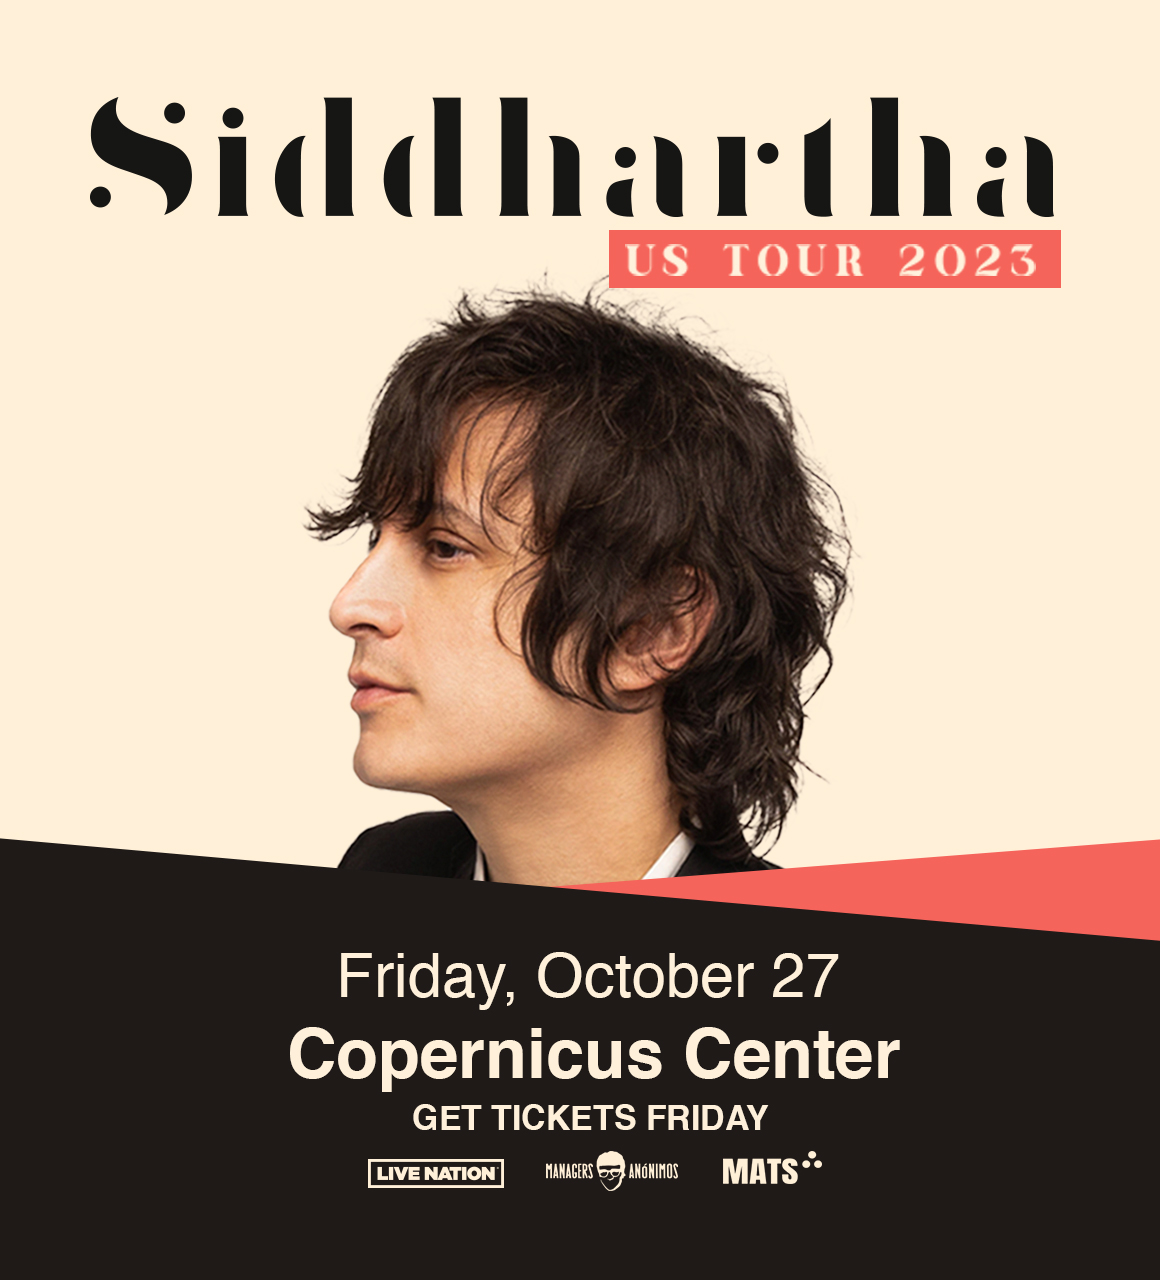 Siddhartha US TOUR 2023 Copernicus Center